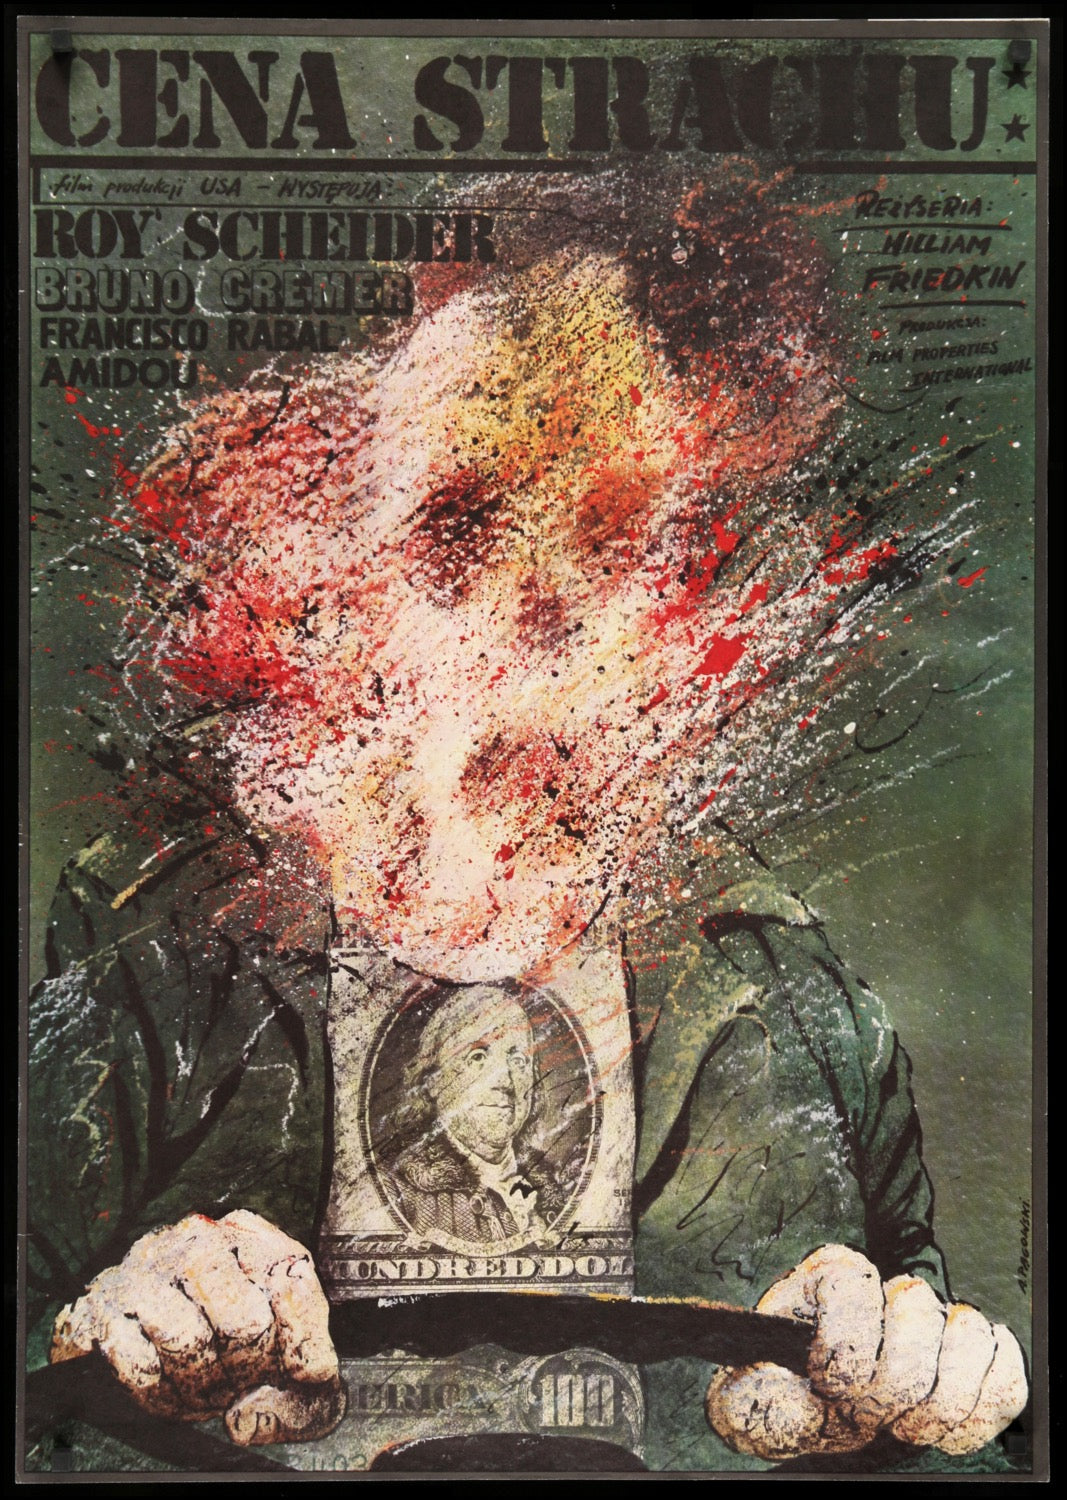 Sorcerer (1977) original movie poster for sale at Original Film Art